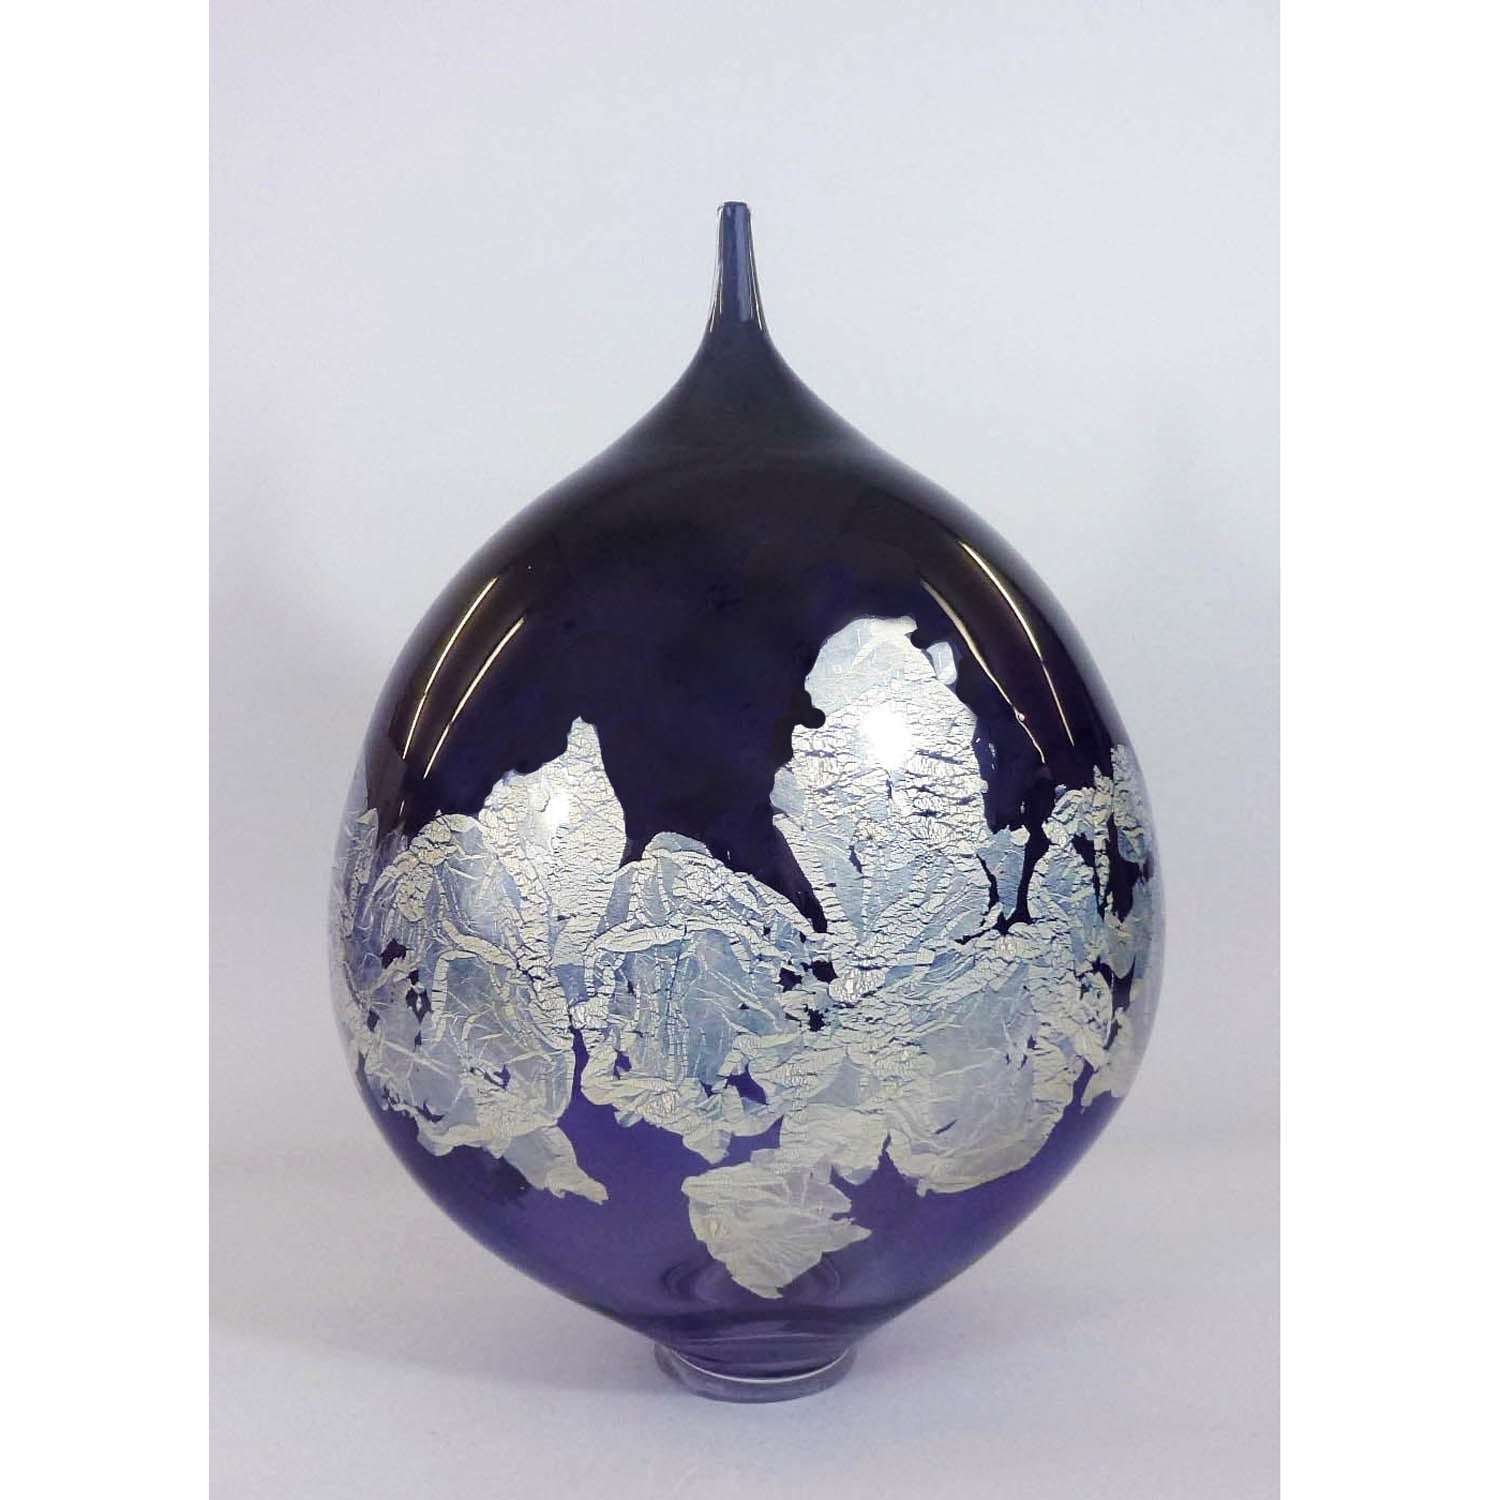 David Thai - Atlas Vase